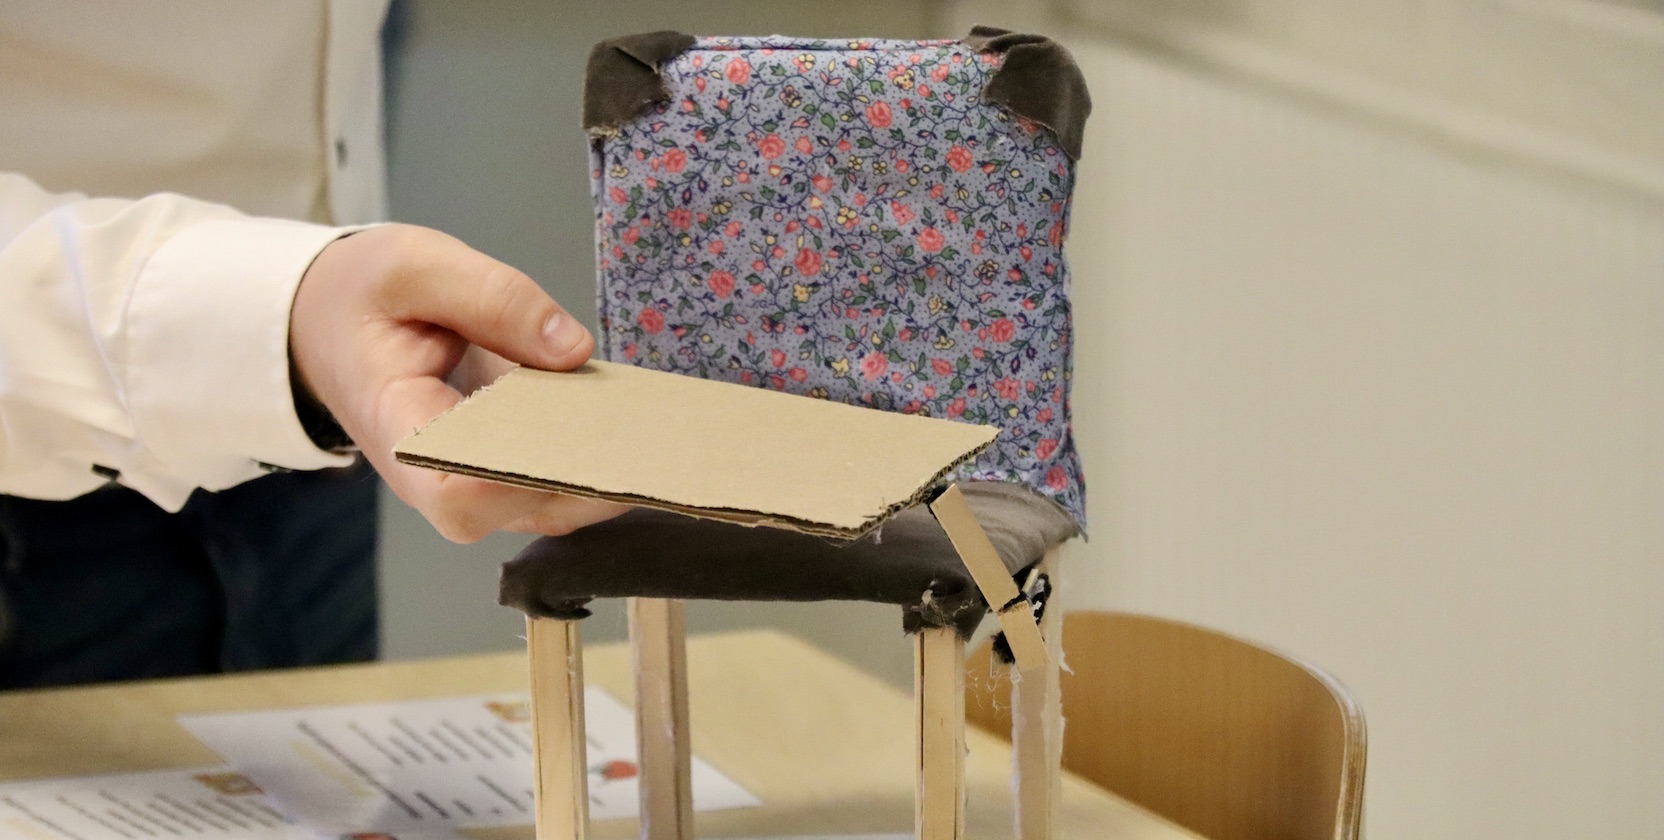 En prototyp i kartong av en stol med ett monterat sidobord, som också går att använda om fotstöd, står på en skolbänk.